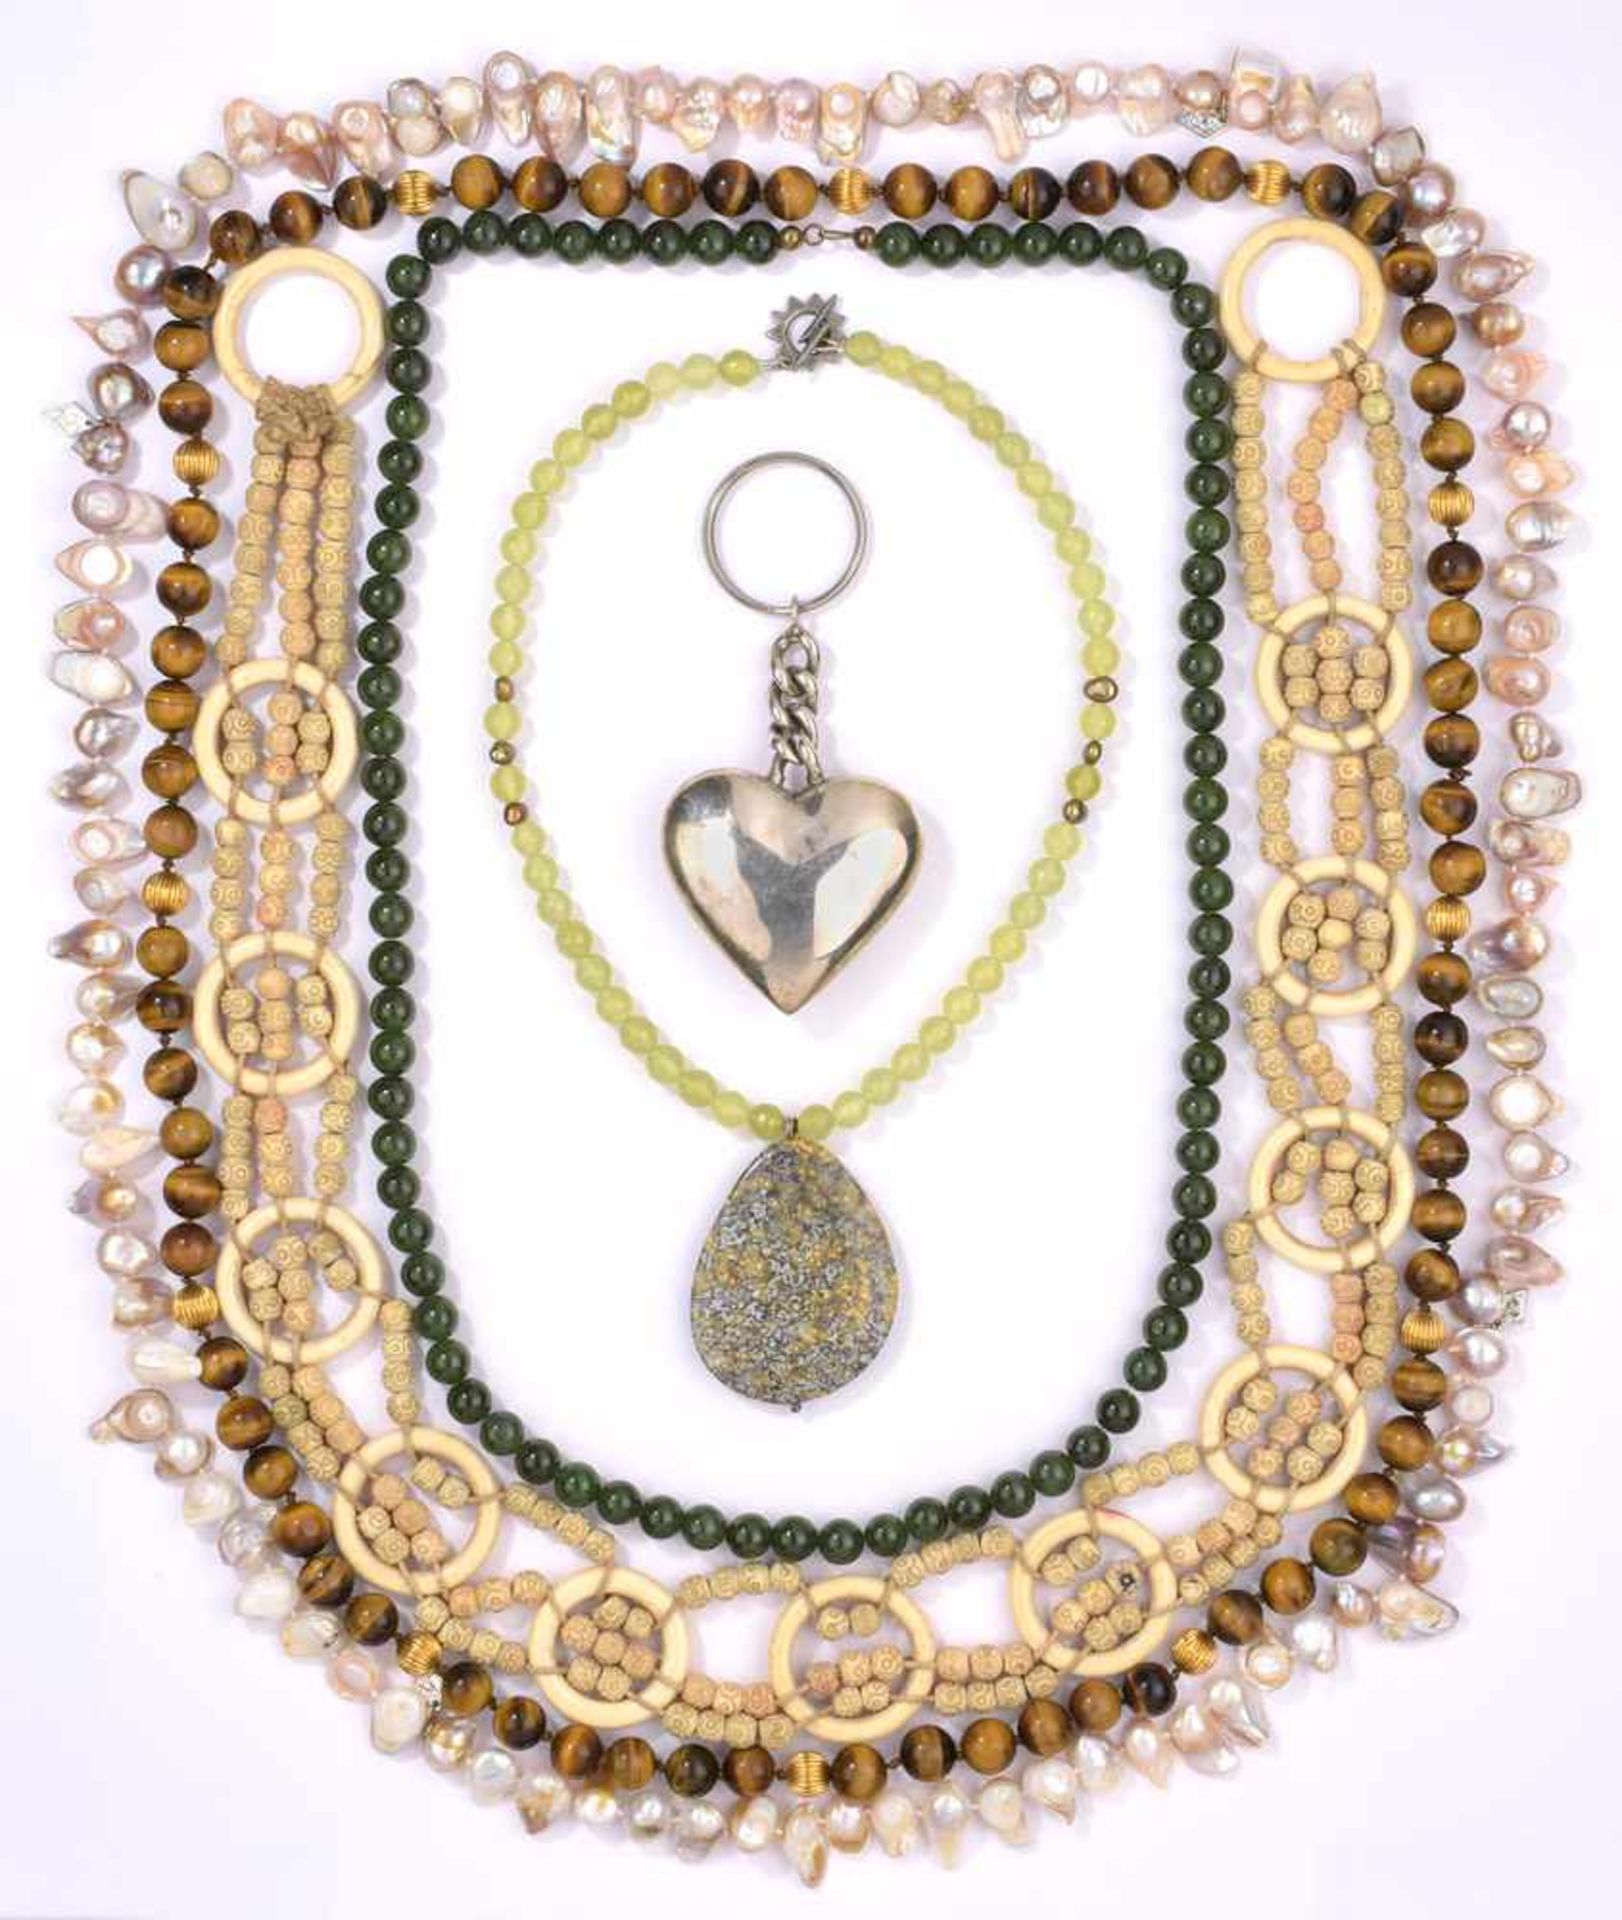 Vier Halsketten, Silber-Herzanhänger und ElfenbeingürtelTigerauge, Jade, Perlen u.a. L 108 cm u.